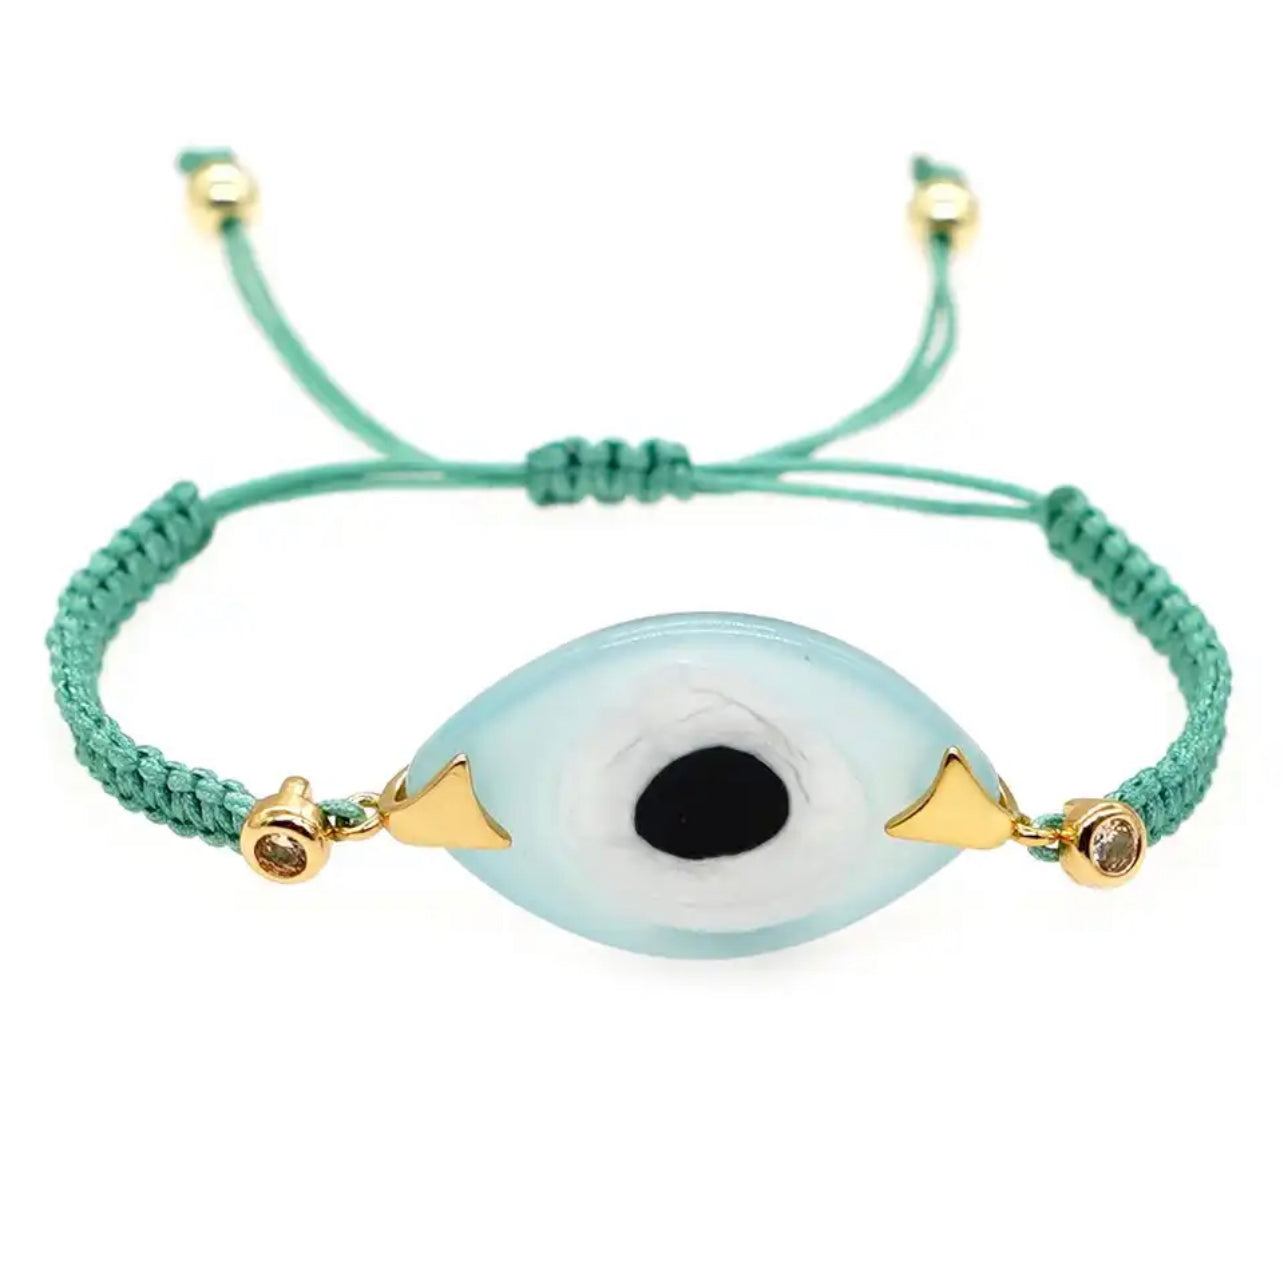 Aesthetic Evil Eye Bracelet Rope Chain